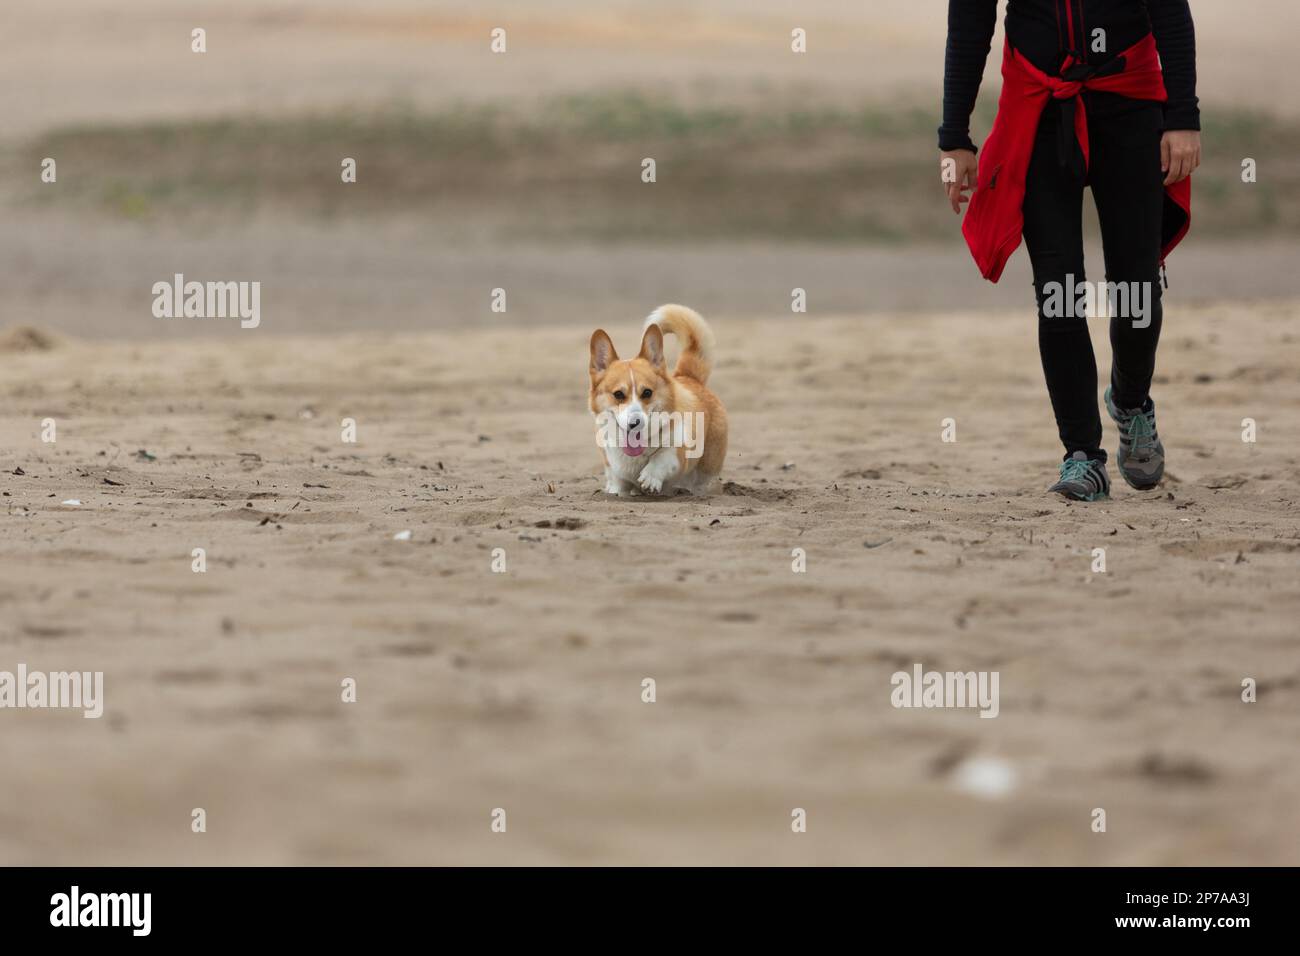 Le propriétaire marche son chien dans le désert. Été Banque D'Images